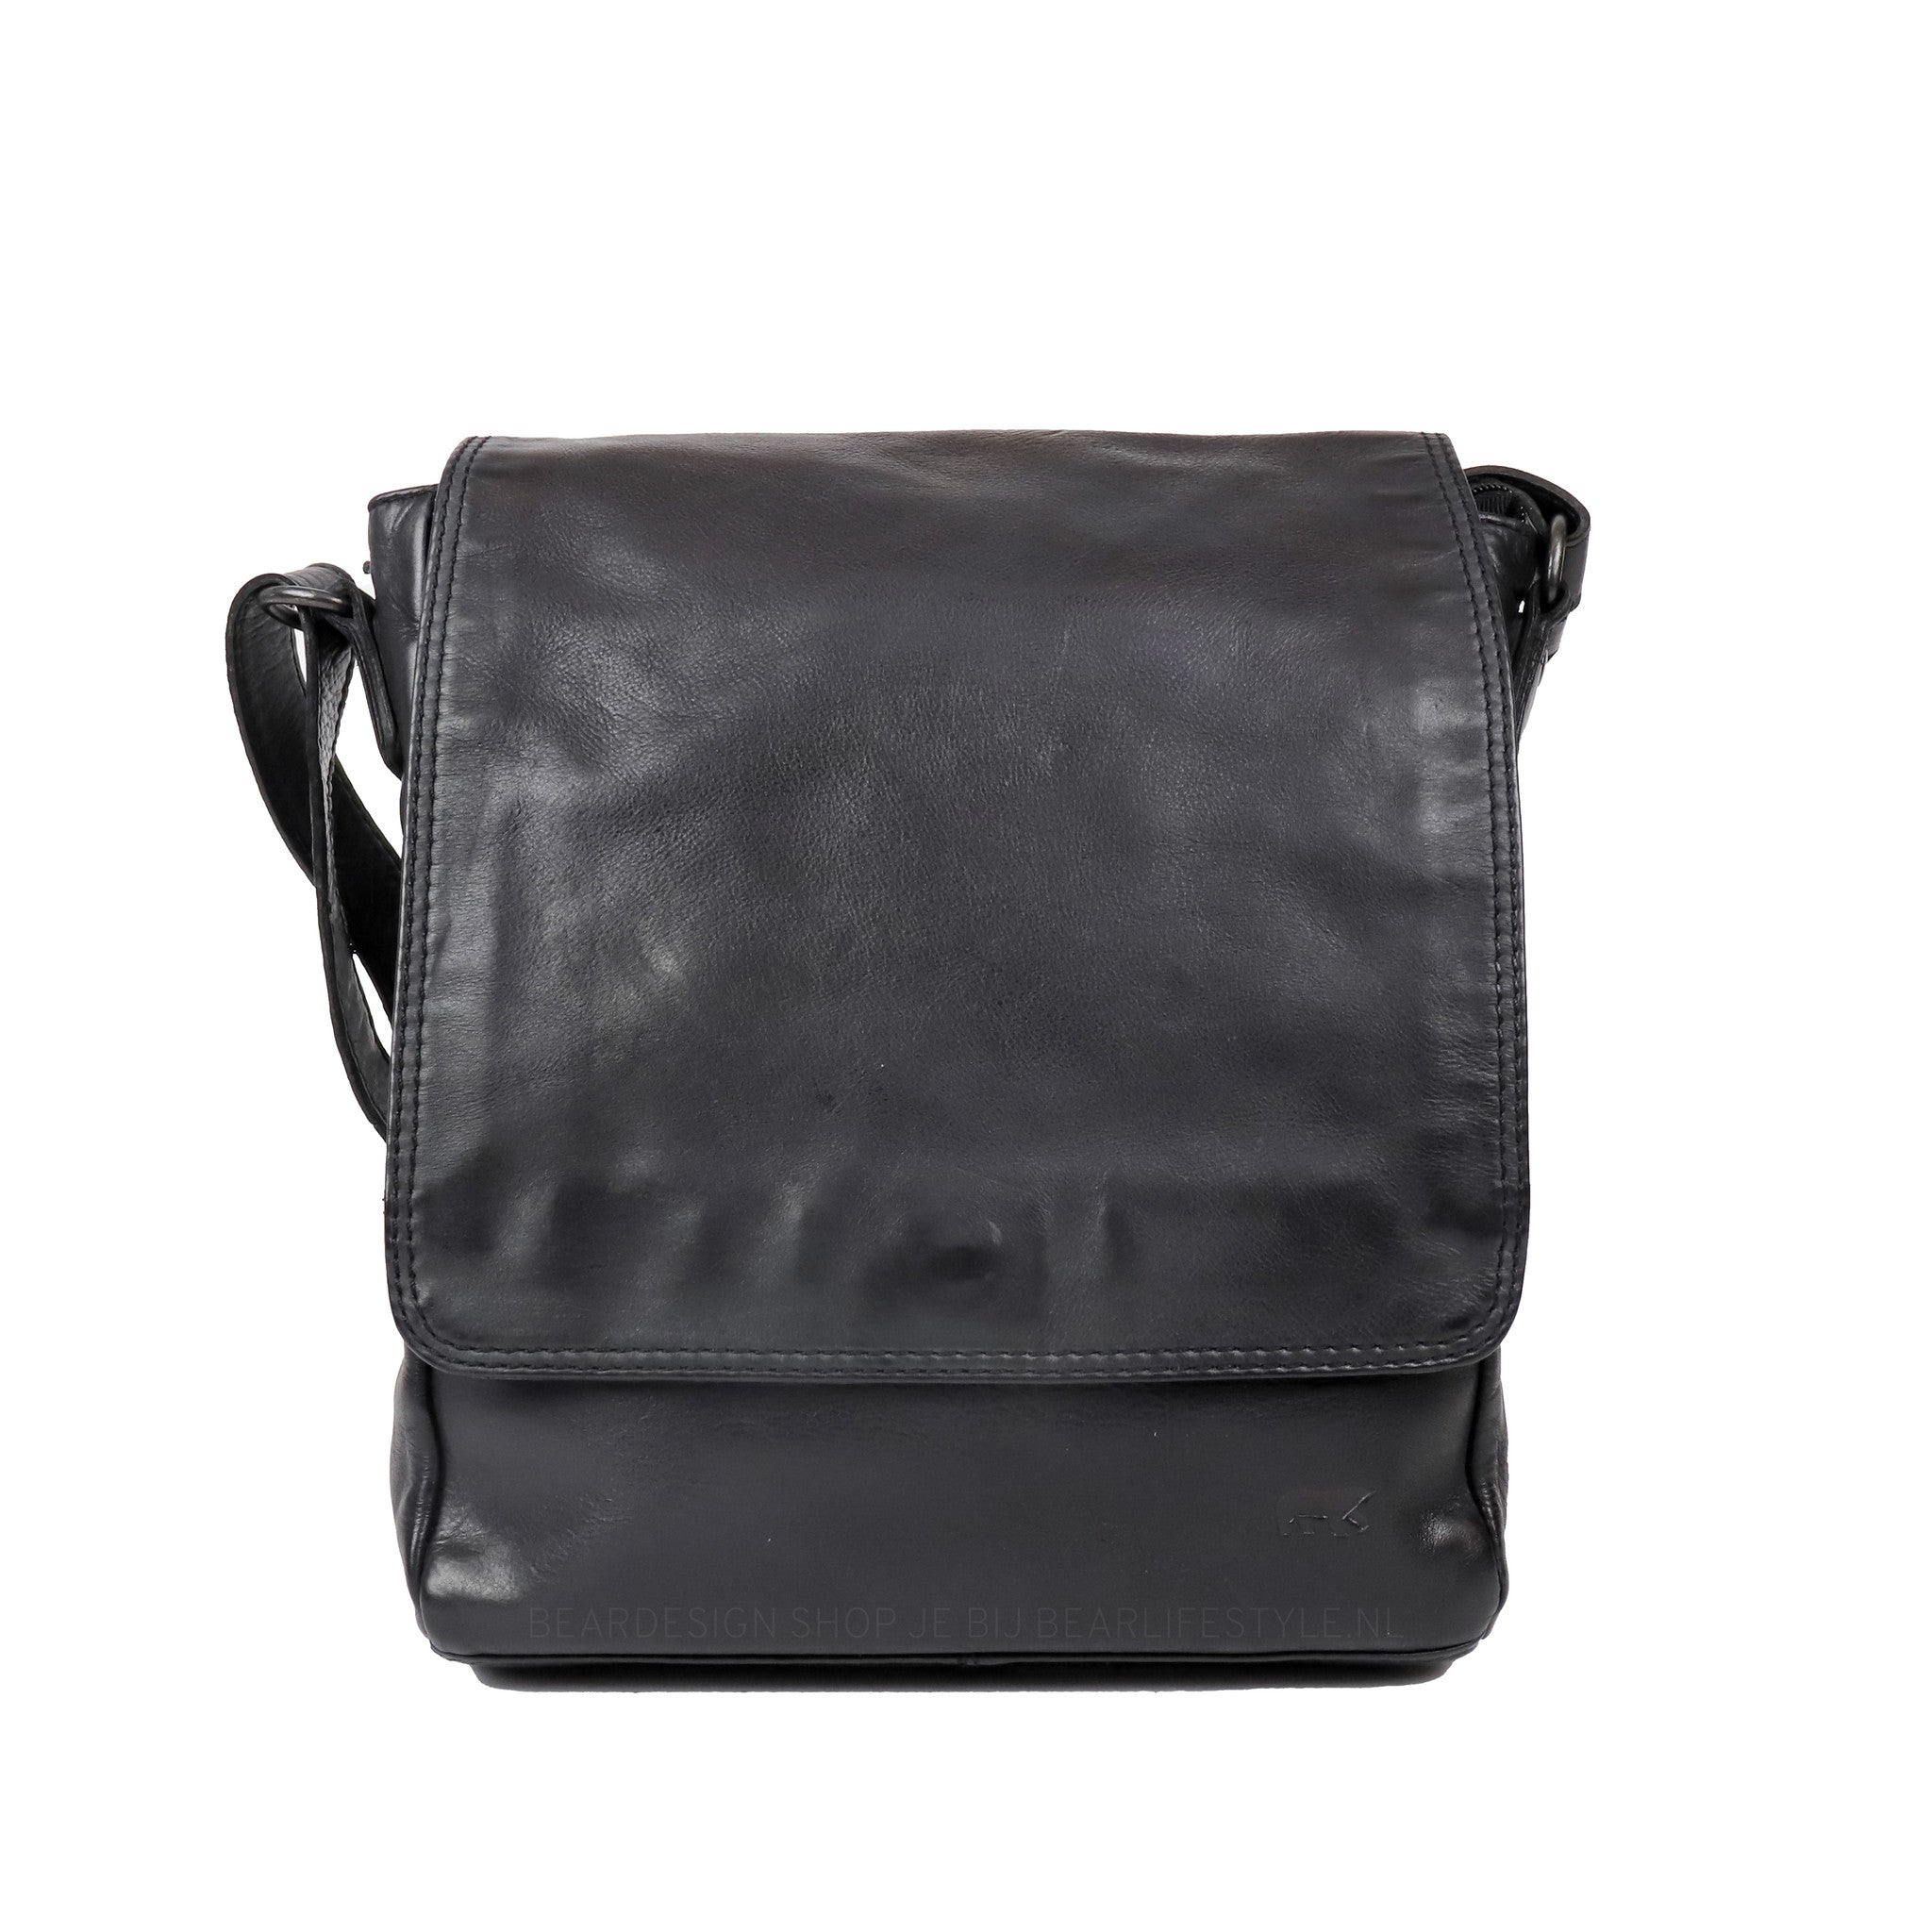 Shoulder bag 'Dirk' black - CL 40025